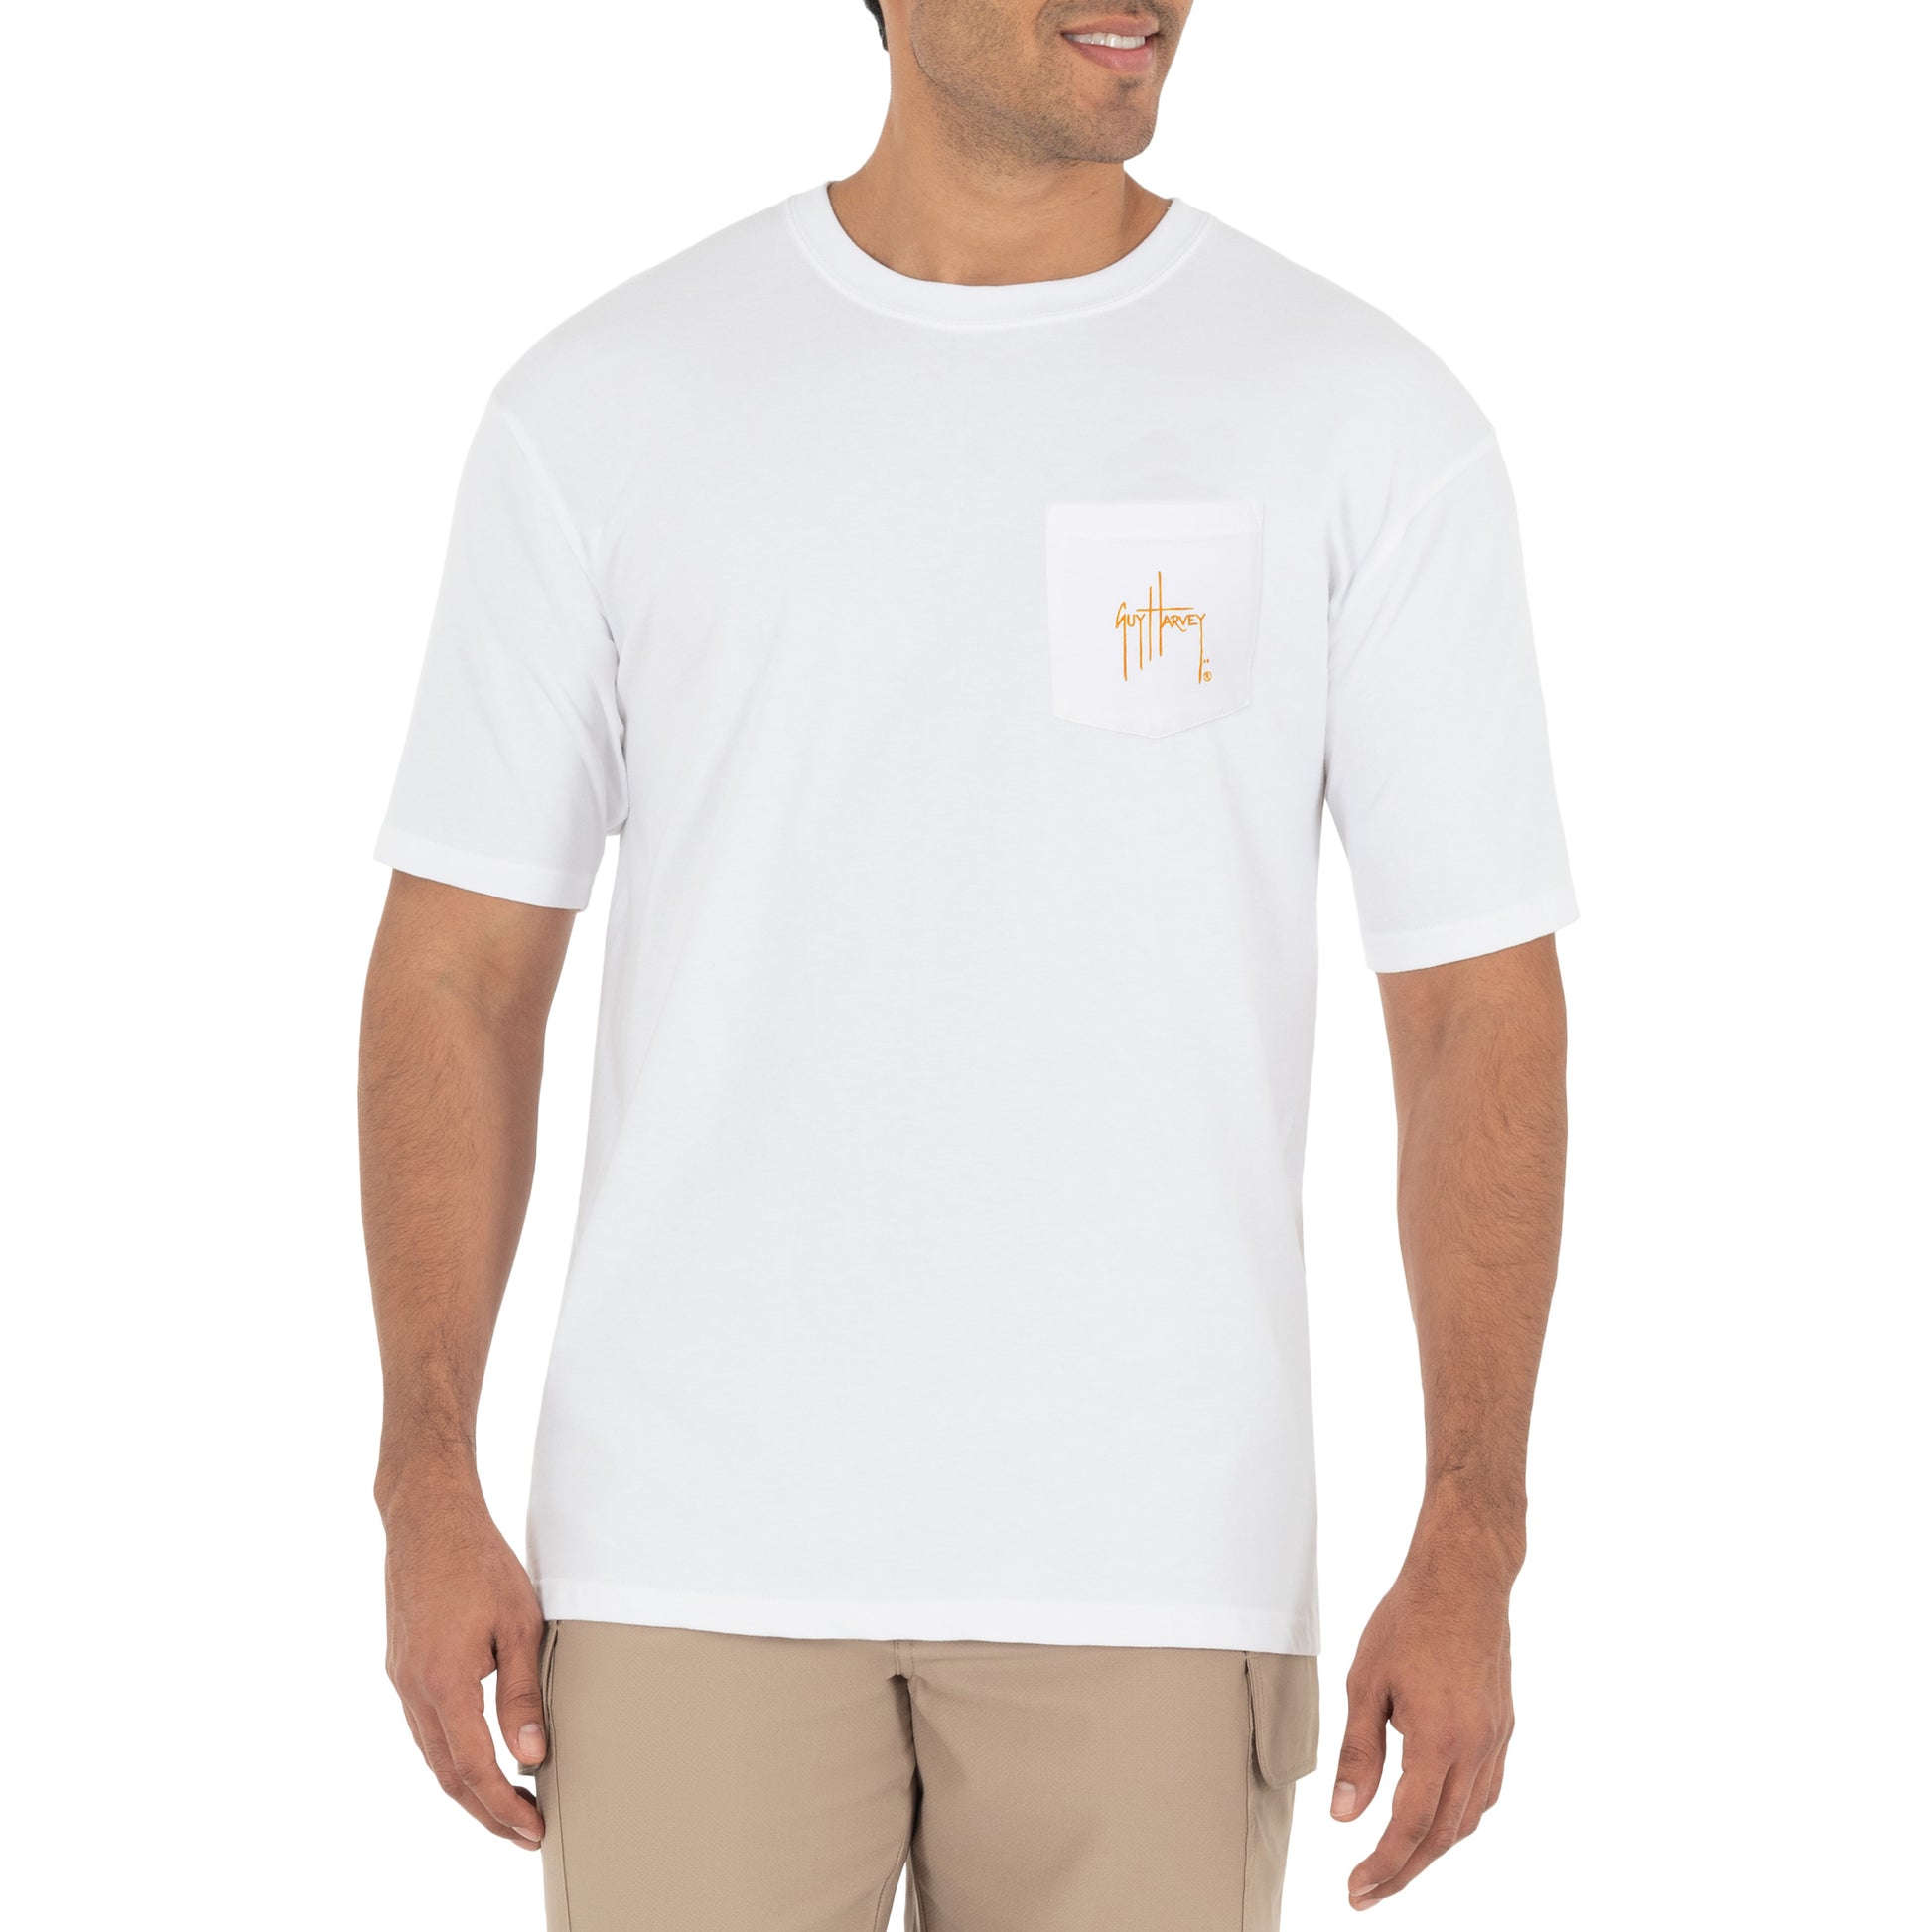 Stacked Tee - Unisex Shortsleeve T-Shirts